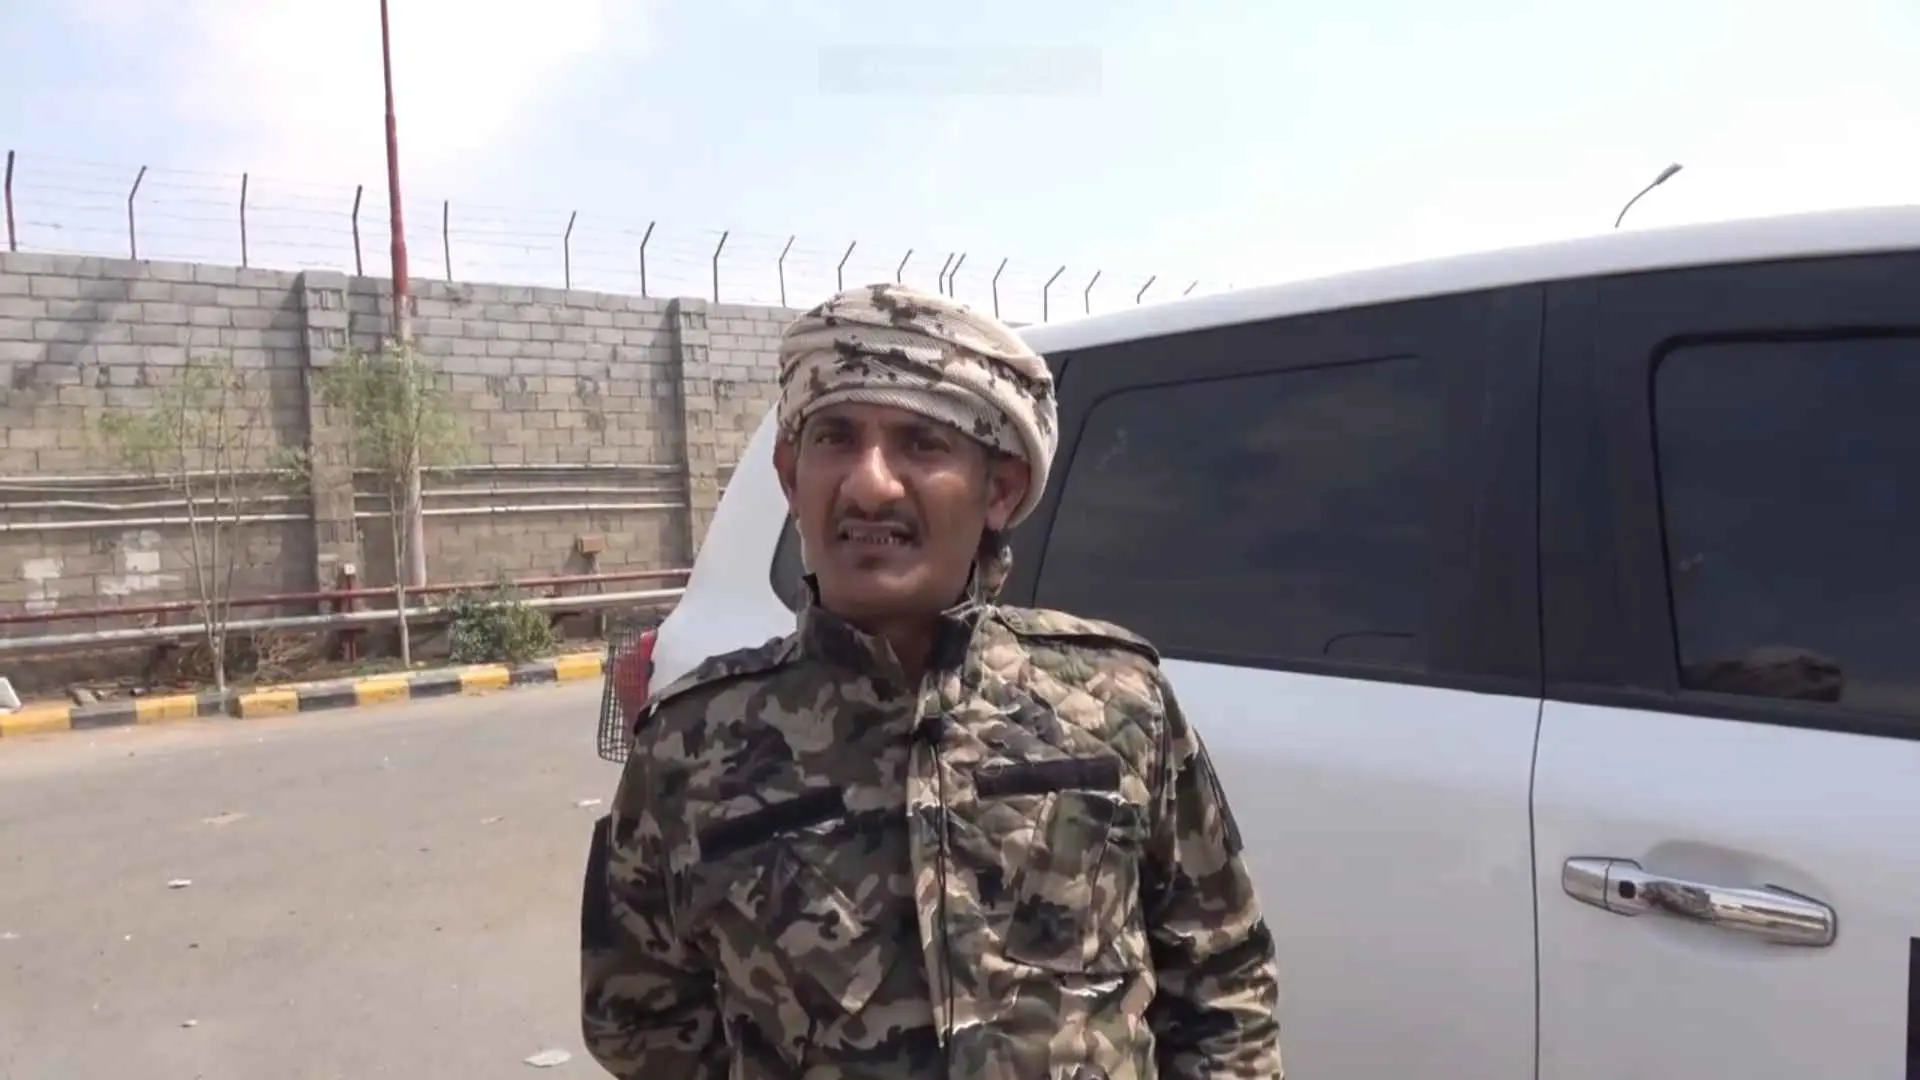 متحدث عسكري لـ"إرم نيوز": قيادات حوثية تغادر صنعاء بعد تحذيرات إيرانية